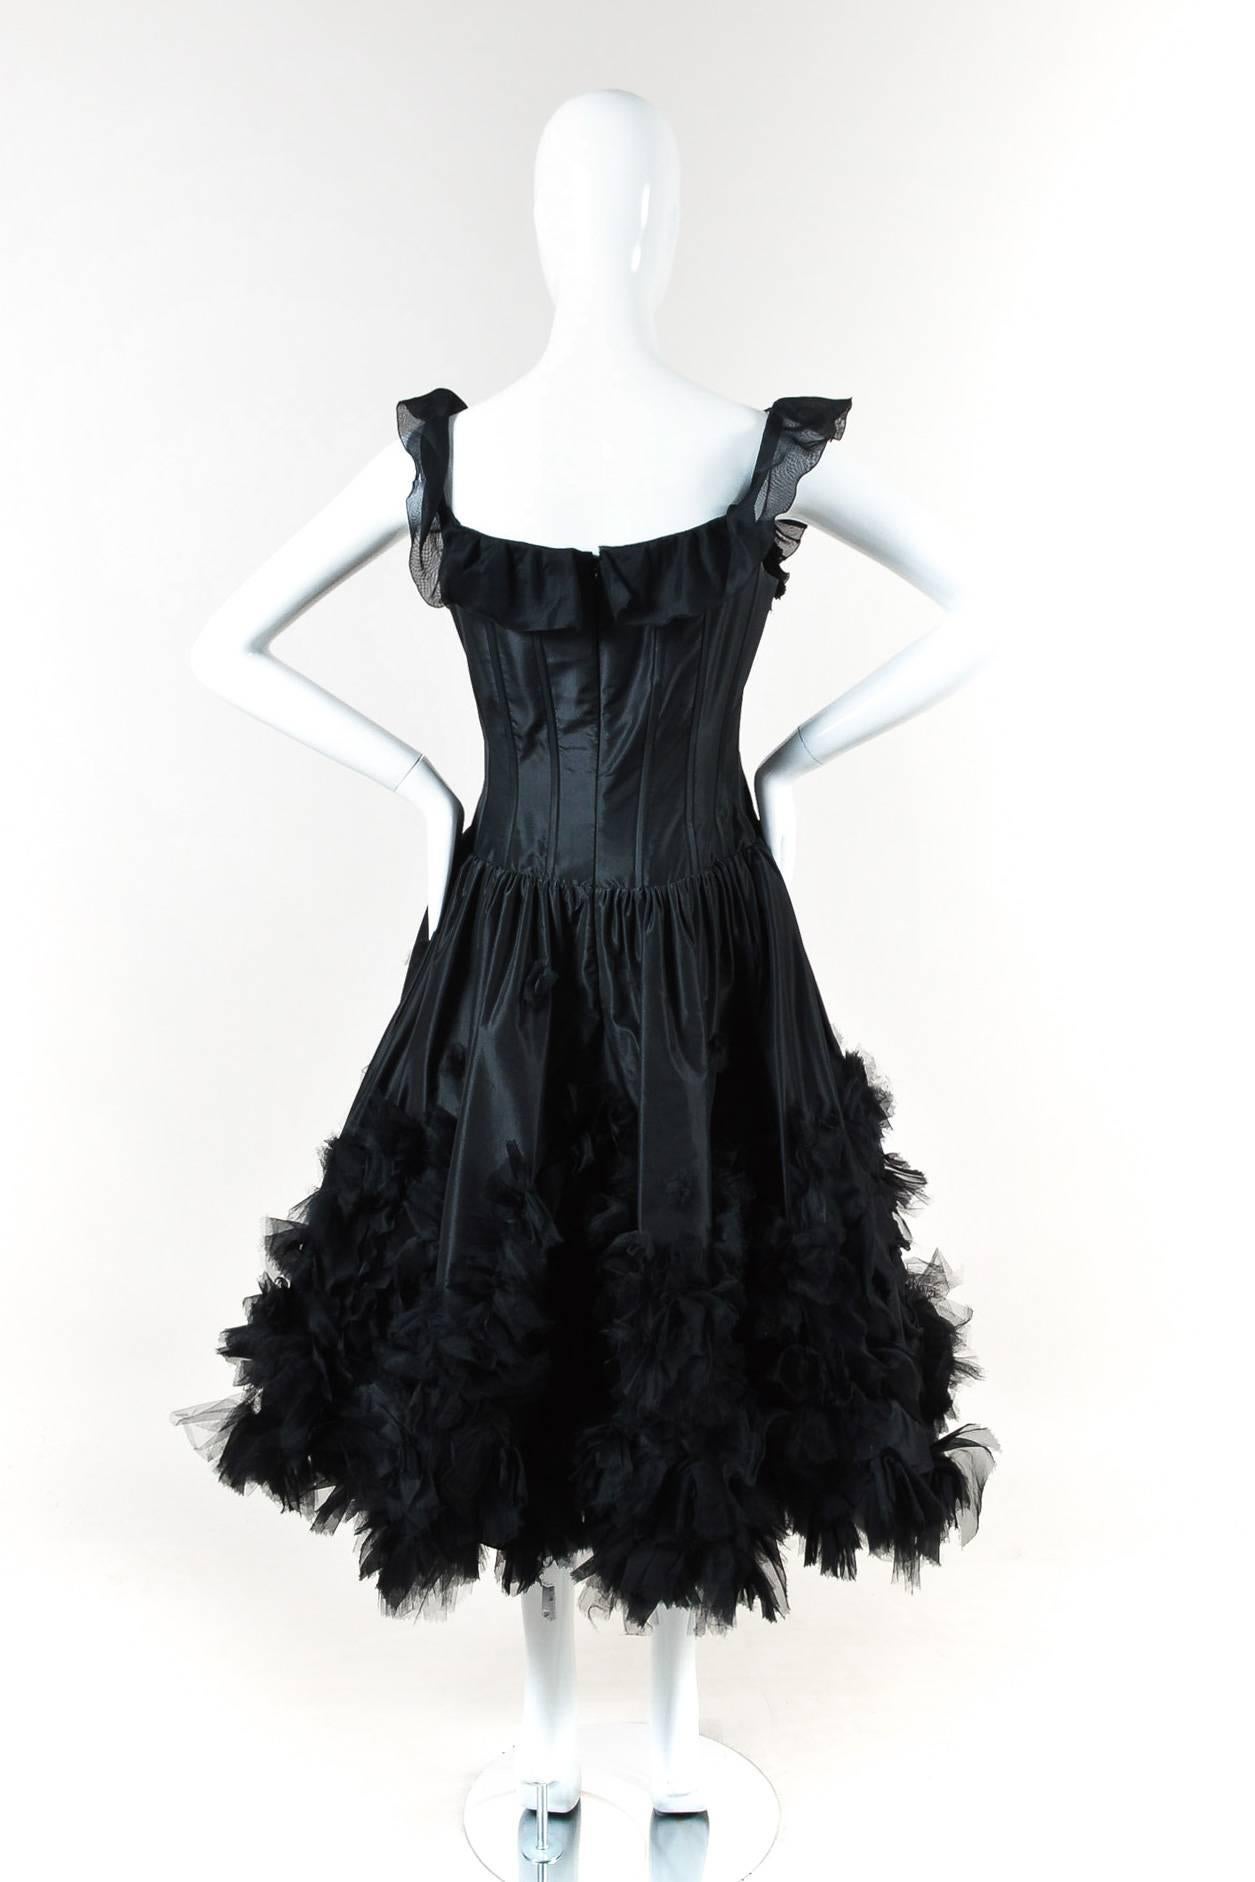 Oscar de la Renta Resort 07 Black Corset Ruffle Dress Size 8 In Good Condition For Sale In Chicago, IL